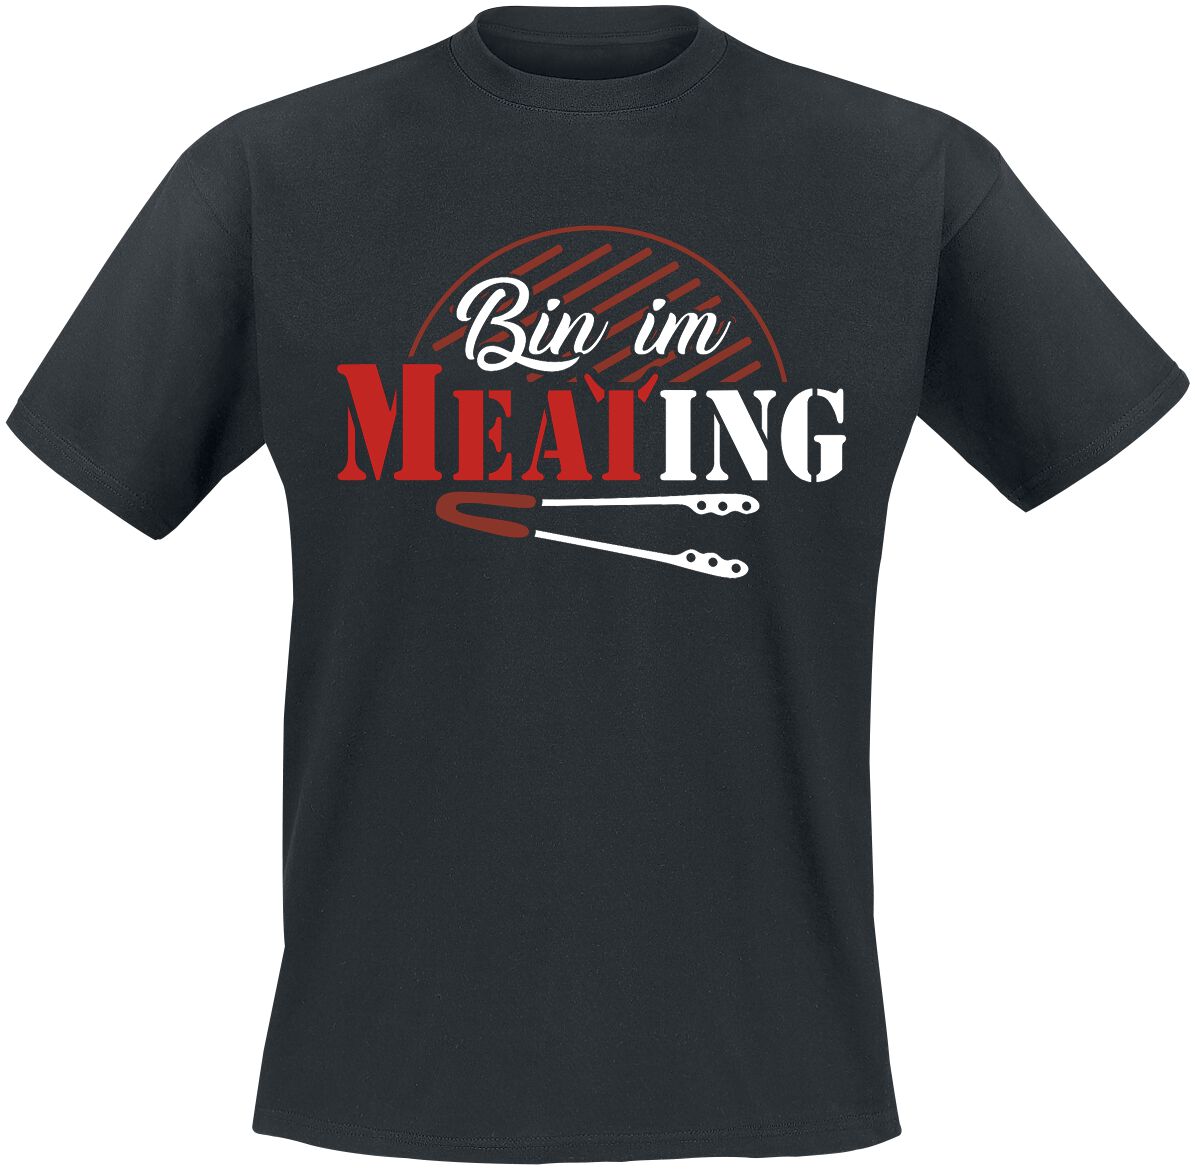 Food T-Shirt - Bin im Meating - S bis 5XL - für Männer - Größe L - schwarz